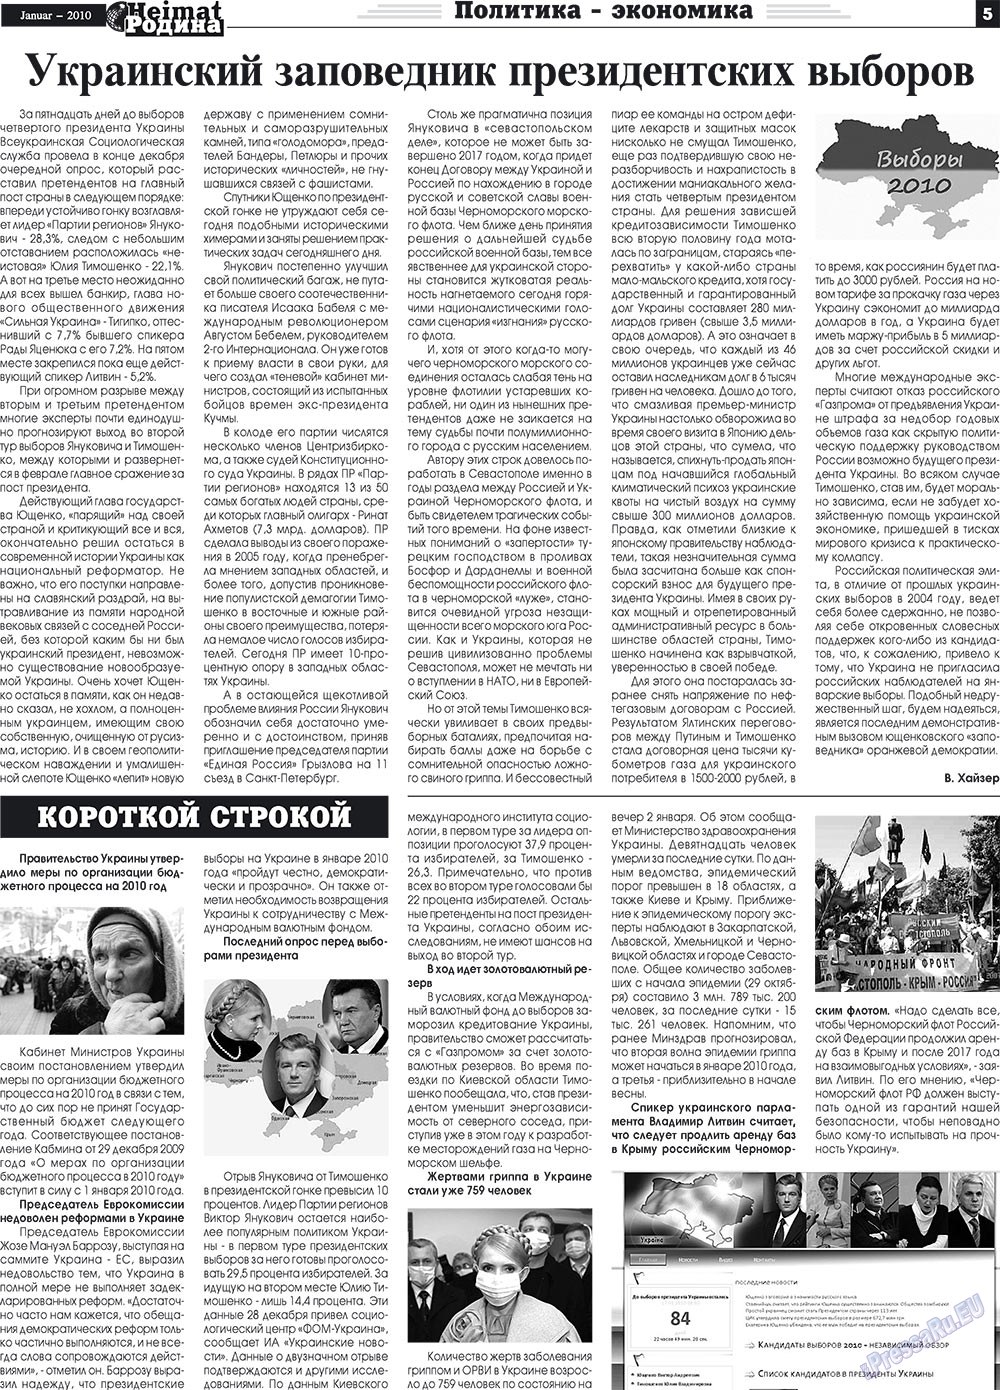 Heimat-Родина (газета). 2010 год, номер 1, стр. 5